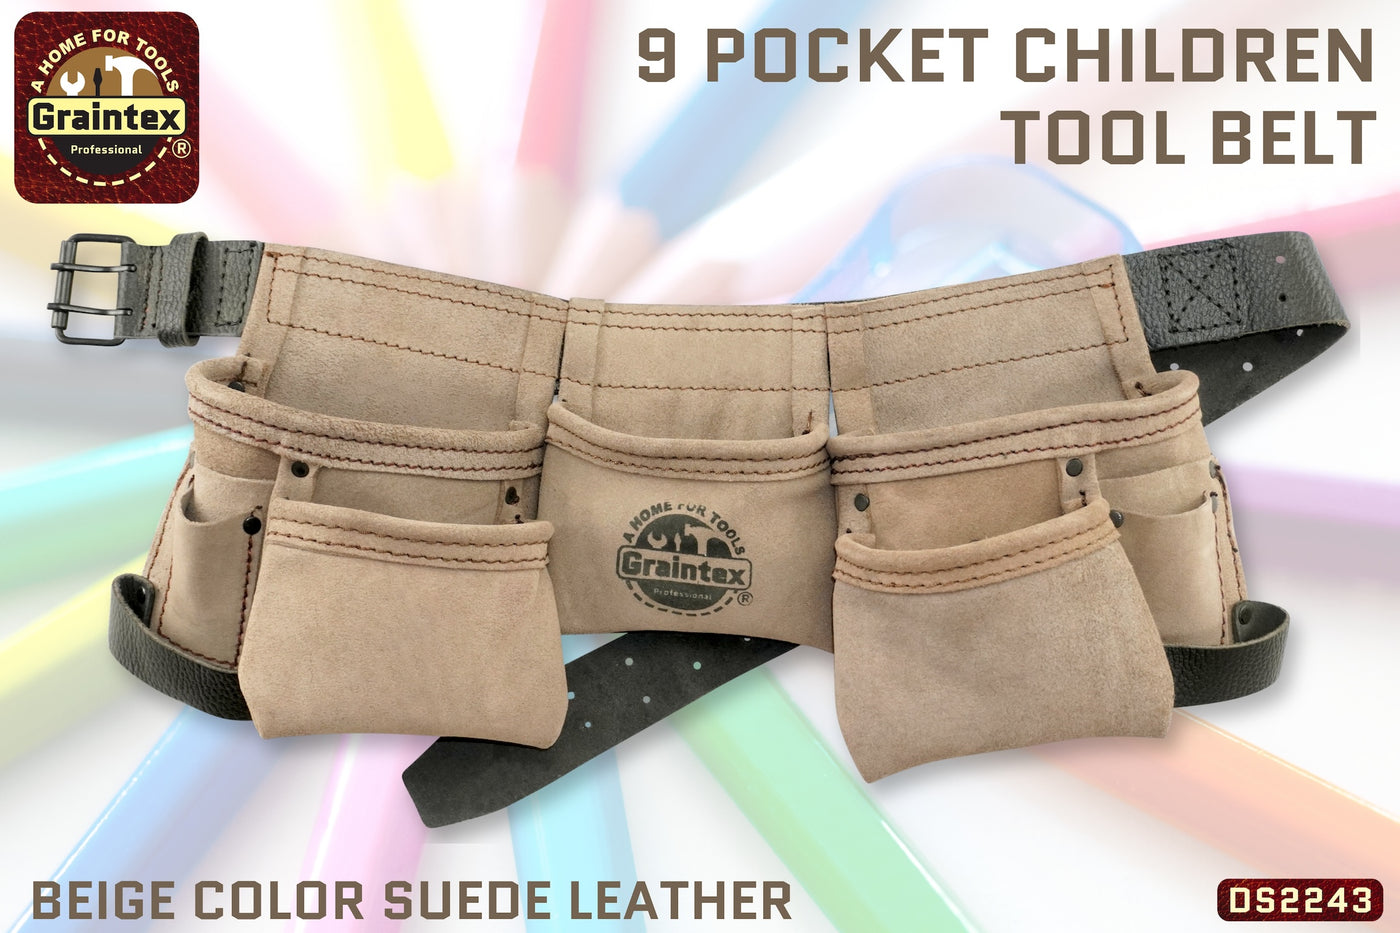 DS2243 :: 9 Pocket Children Tool Belt Beige Color Suede Leather